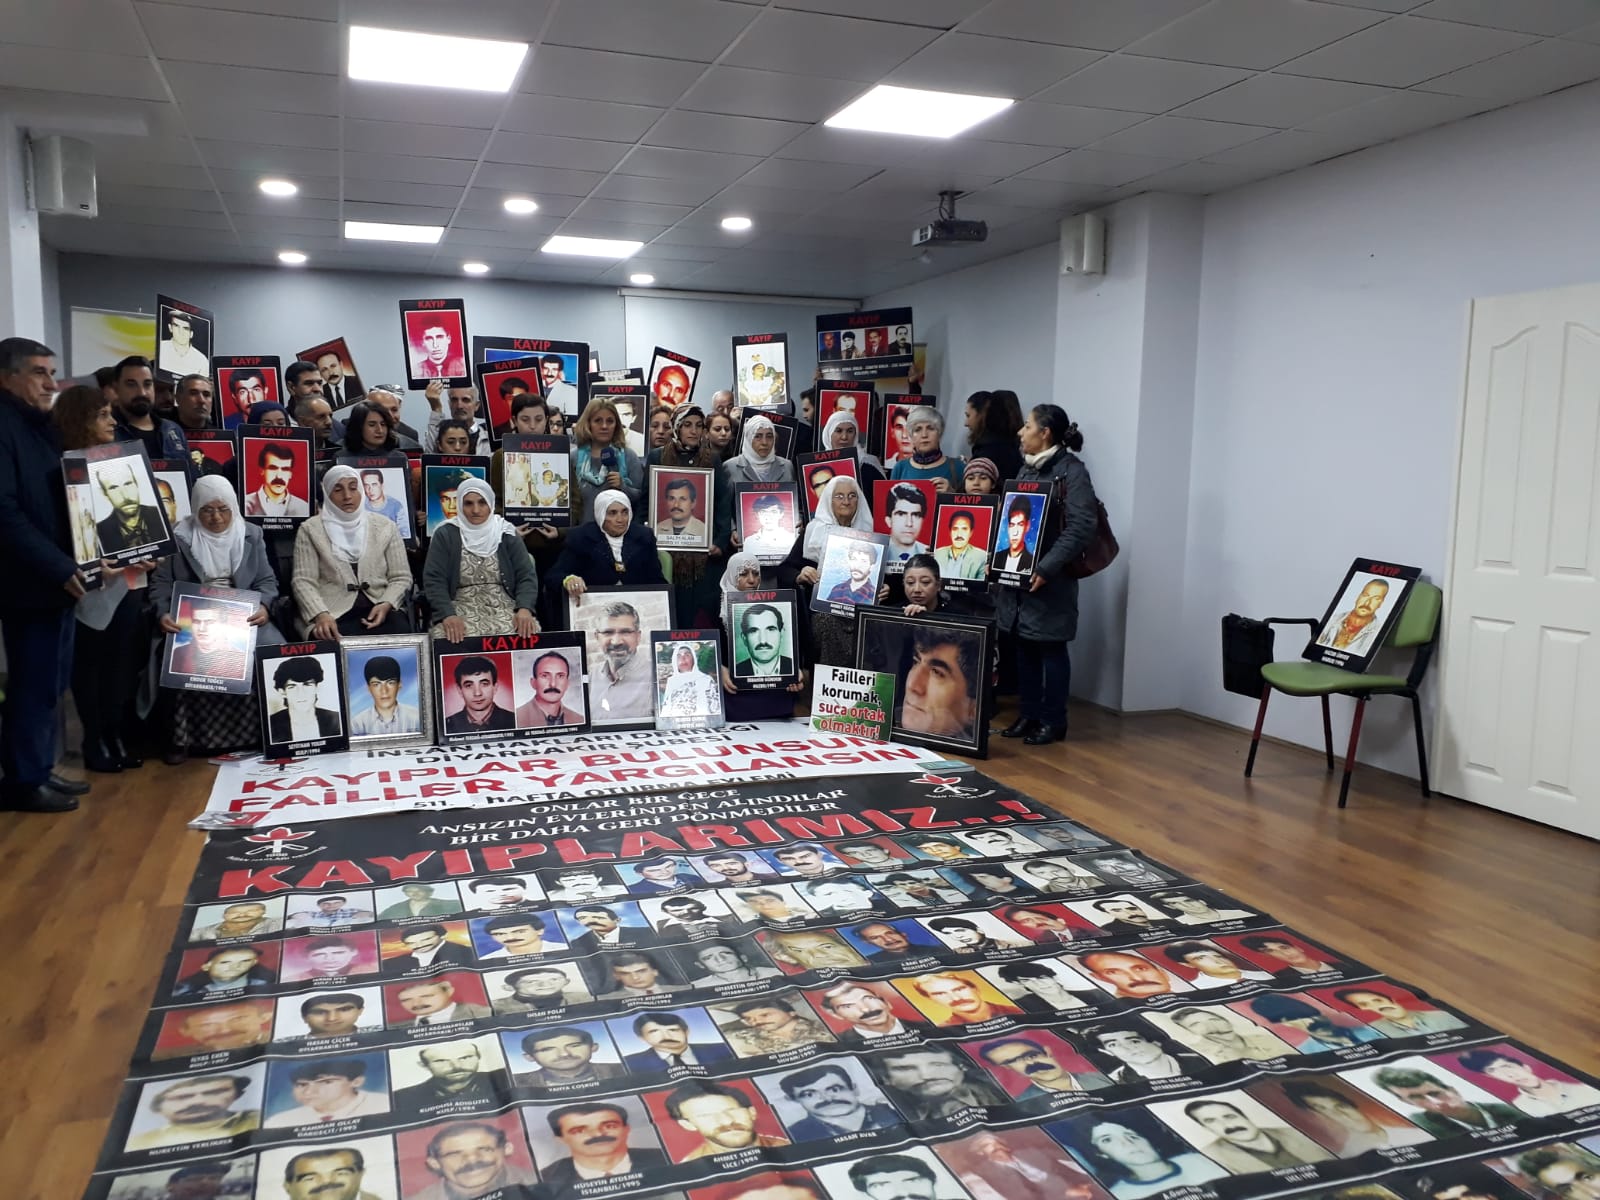 Diyarbakır Dicle Amed Kadın Platformu “Kayıplar Bulunsun, Failler Yargılansın” Eylemine Katıldı